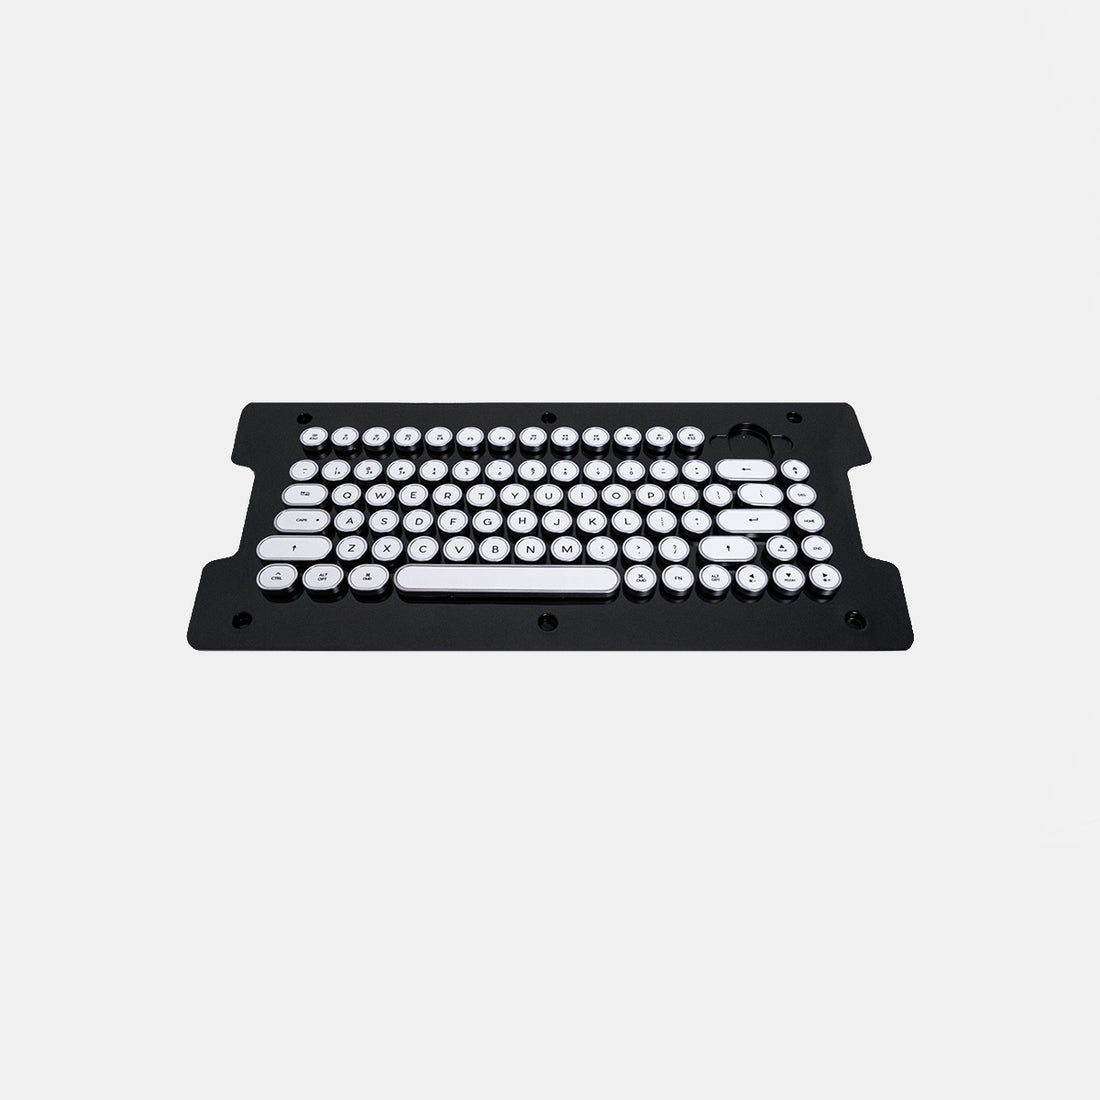 أغطية مفاتيح مدمجة قديمة (أجهزة الكمبيوتر الشخصية وأجهزة Mac)